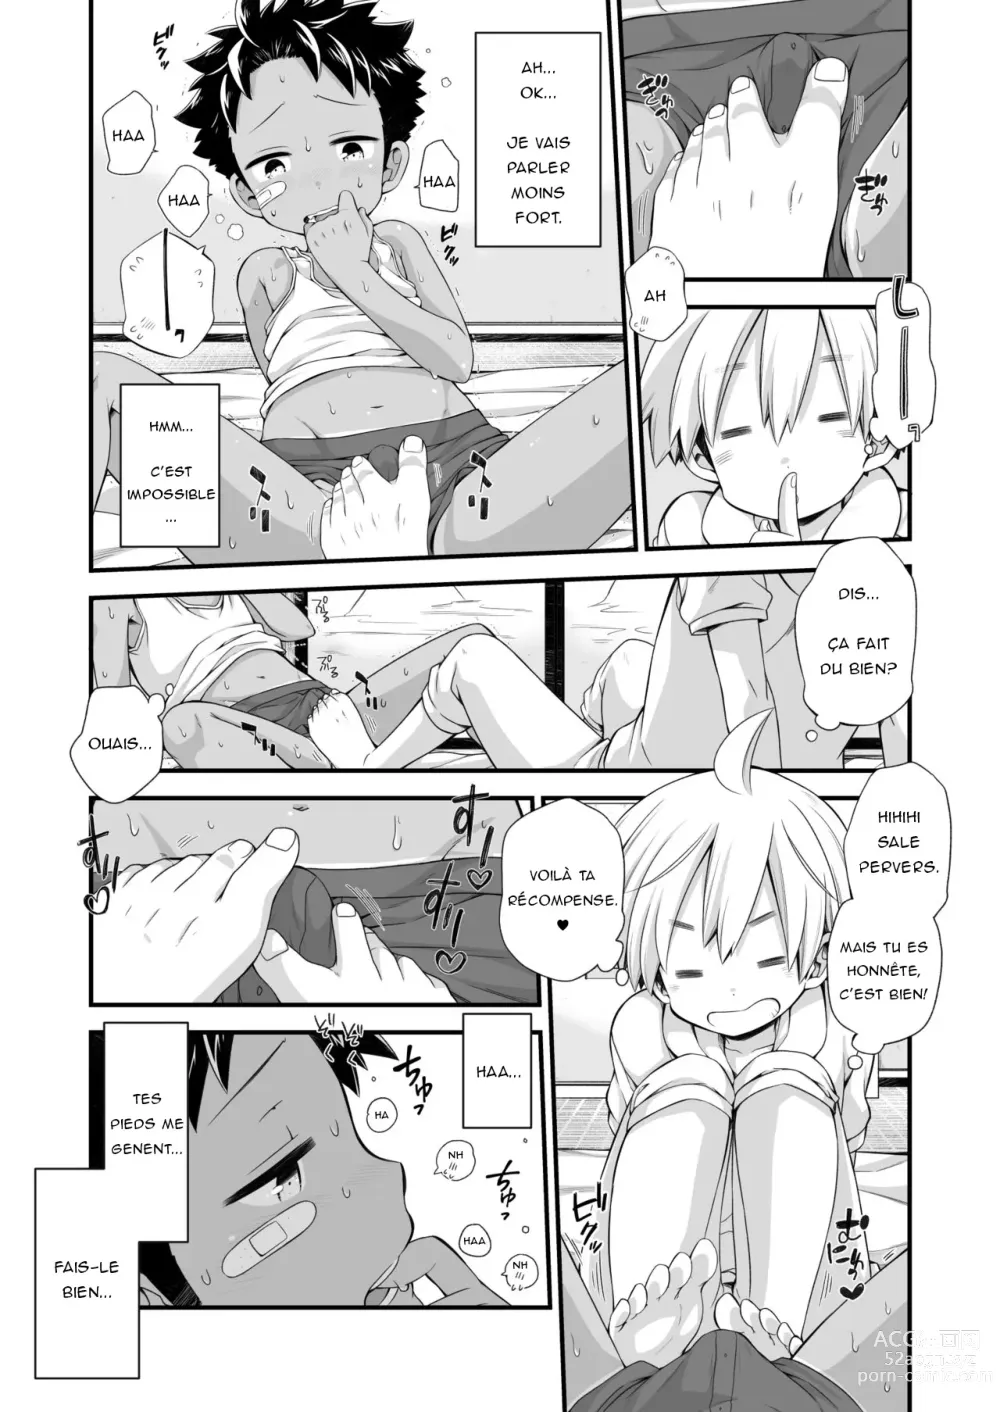 Page 6 of doujinshi Riku Manga Omake Hon